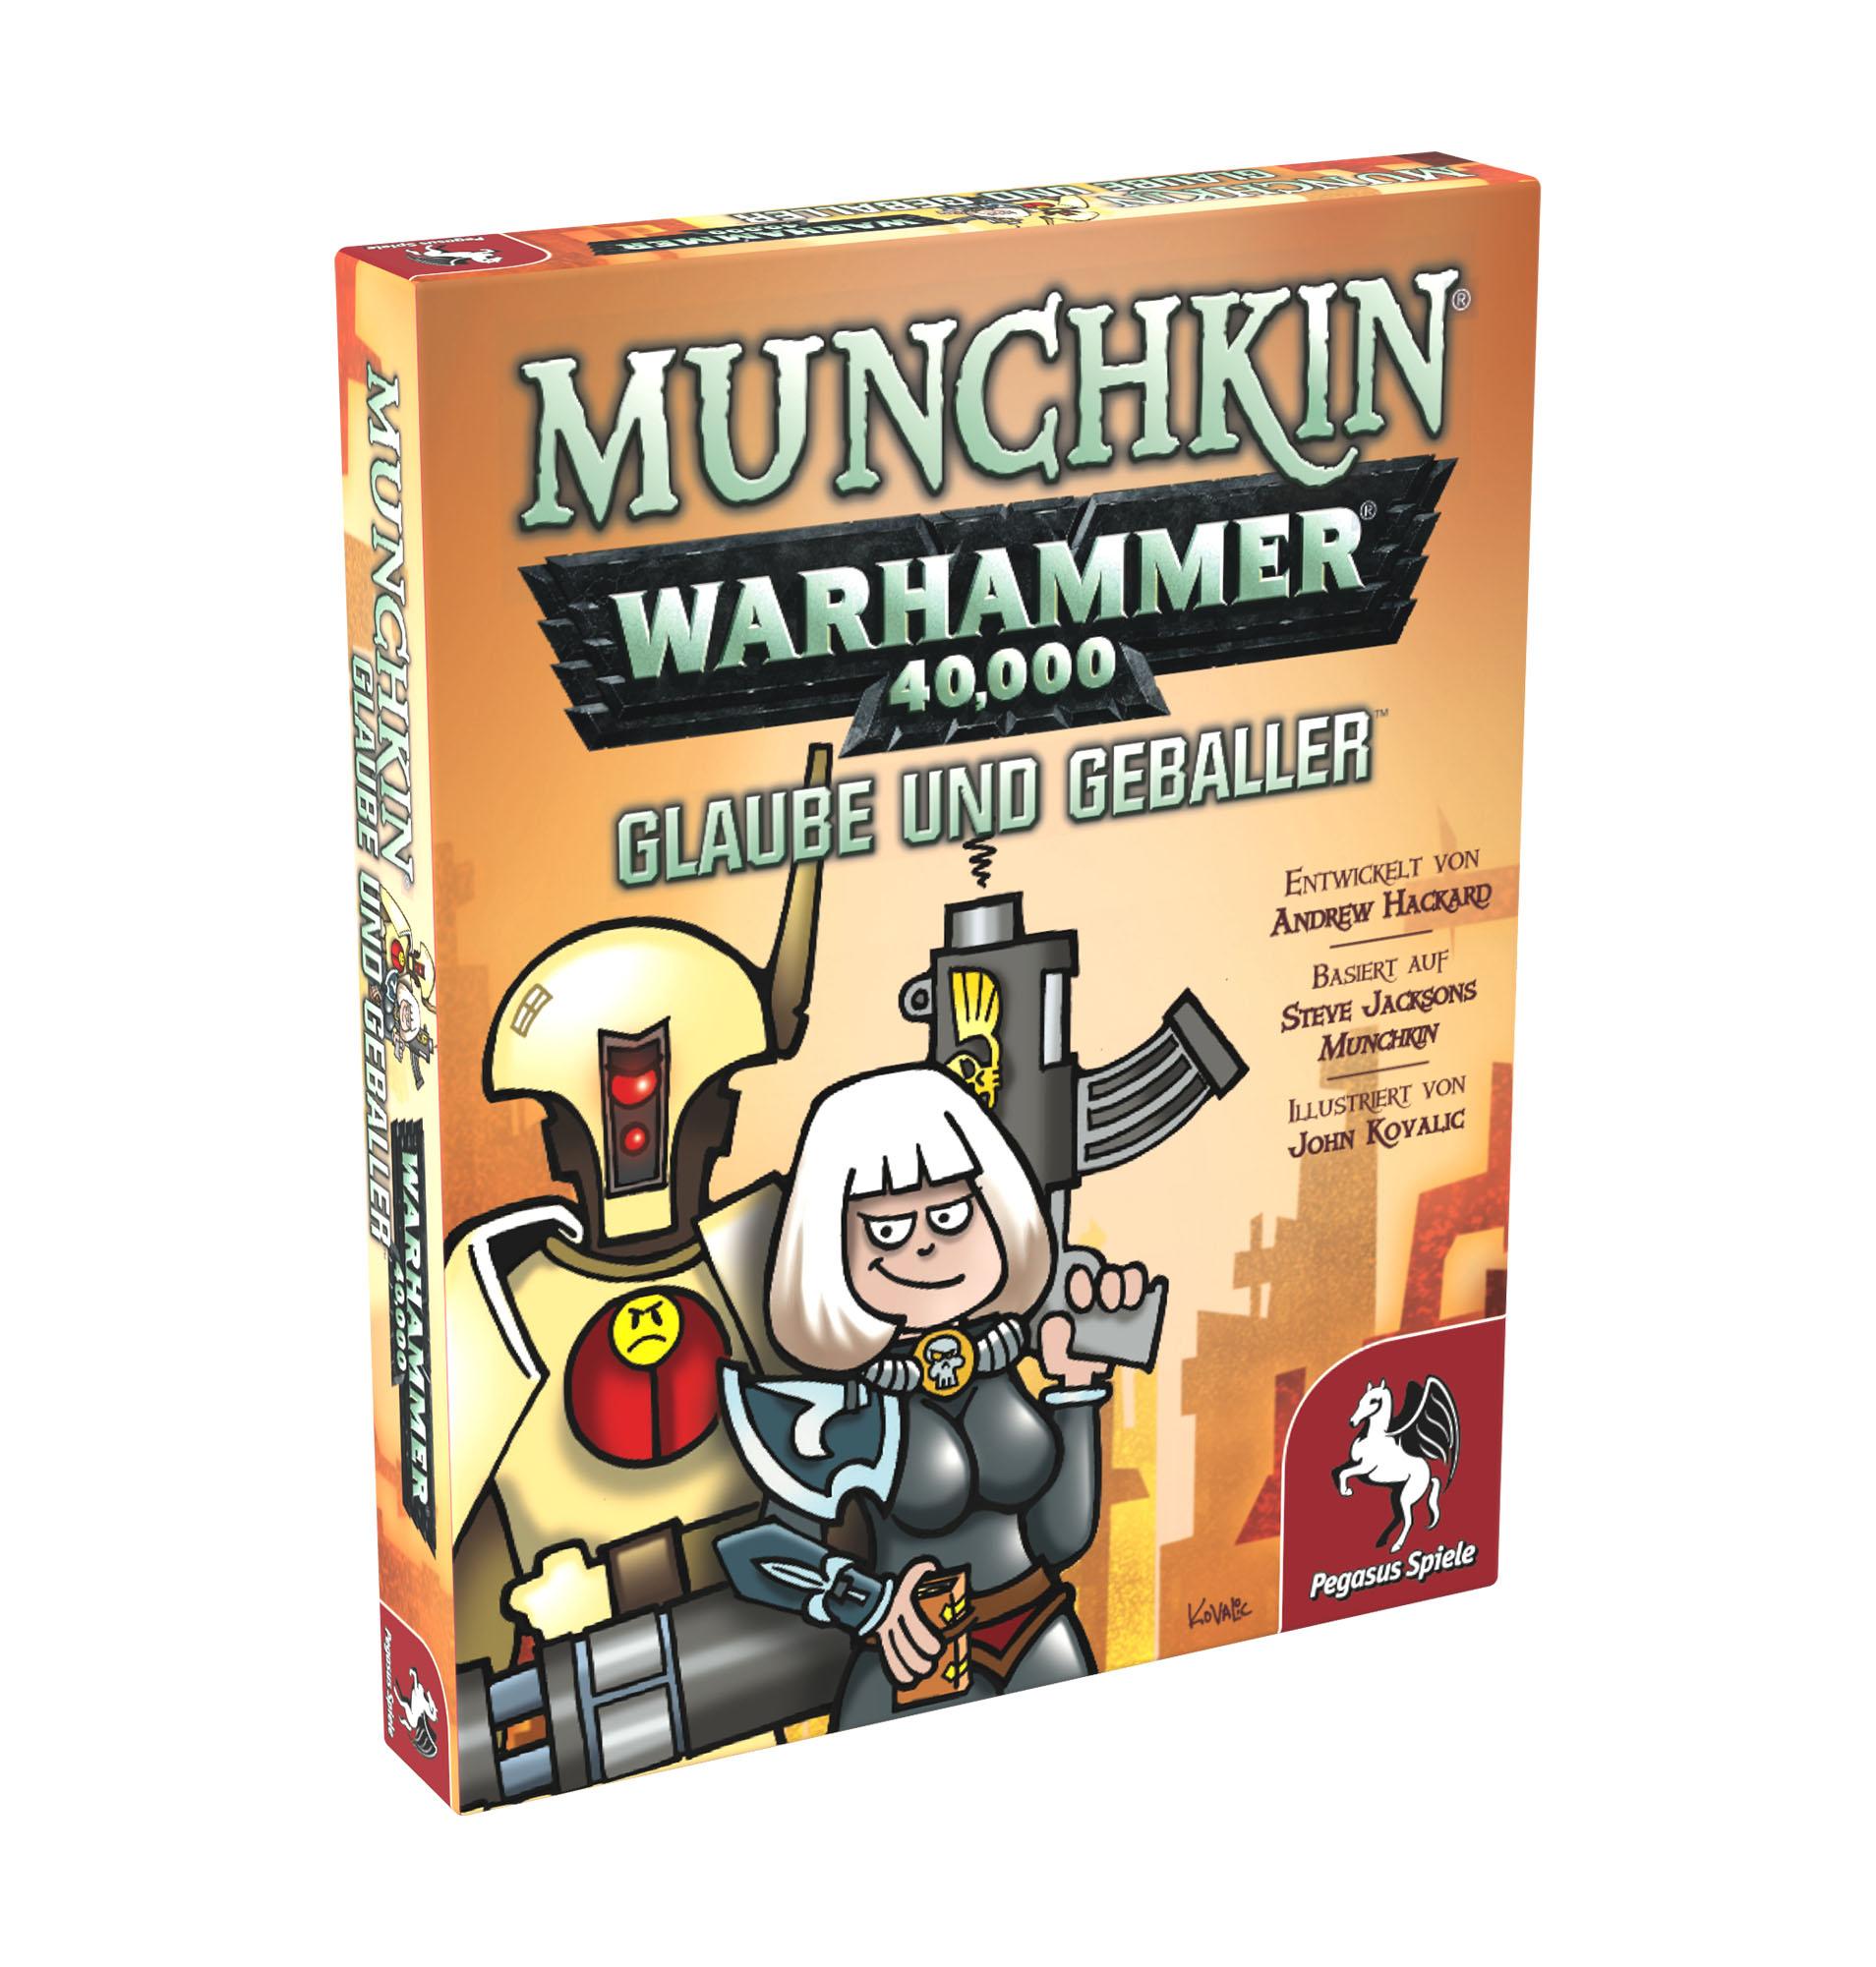 Munchkin Warhammer 40,000 - Erweiterung: Glaube und Geballer